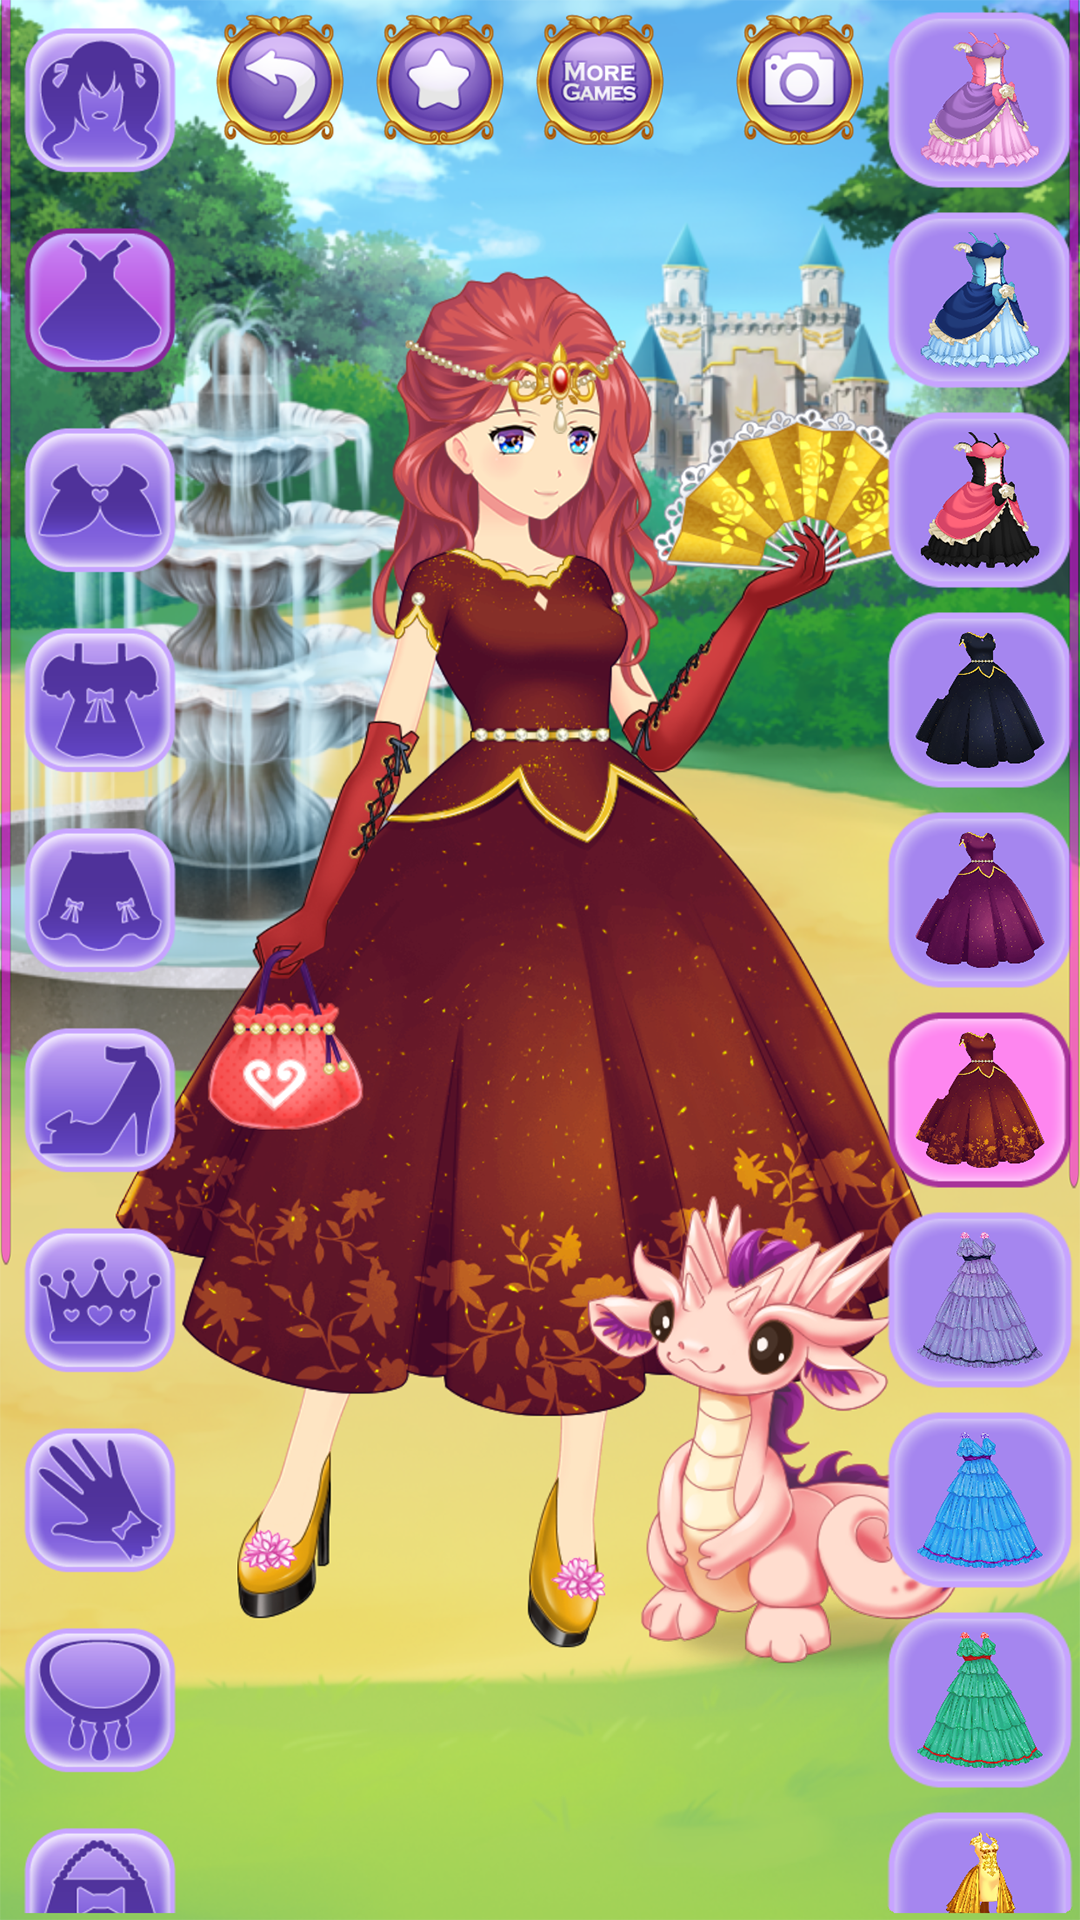 Screenshot 1 of Игры одевалки аниме принцессы 1.2.1